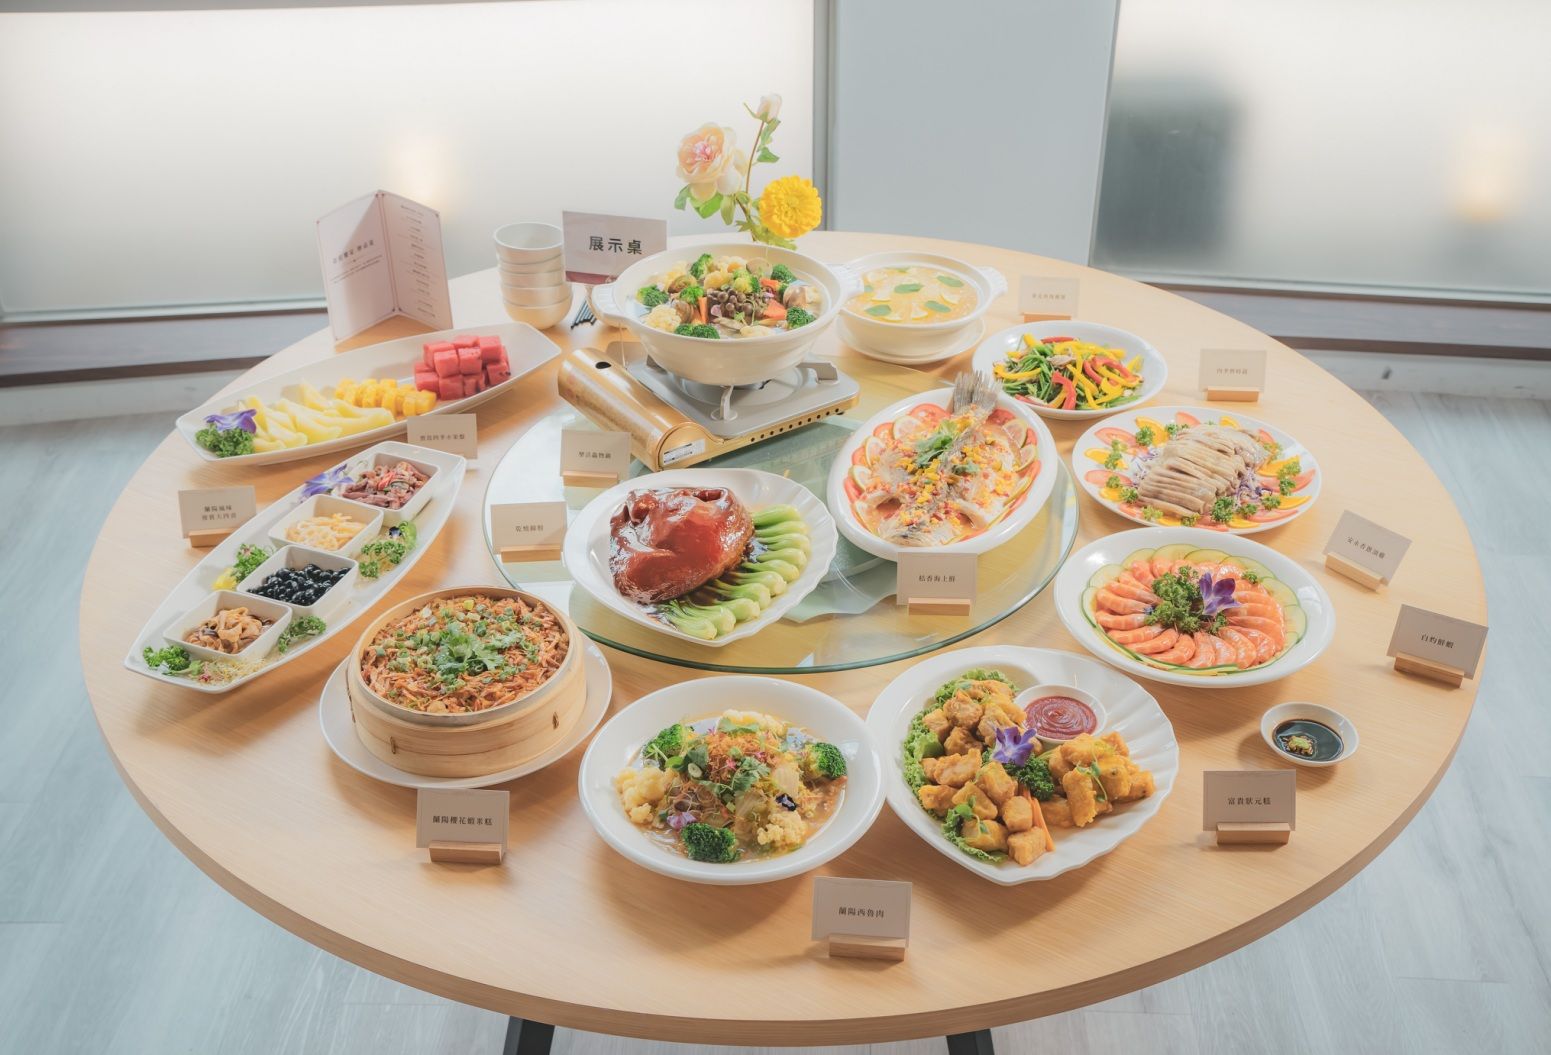 安永集團旗下觀光工廠安永心食館推出食旅饗宴，3,000元起就可體驗在地辦桌料理。